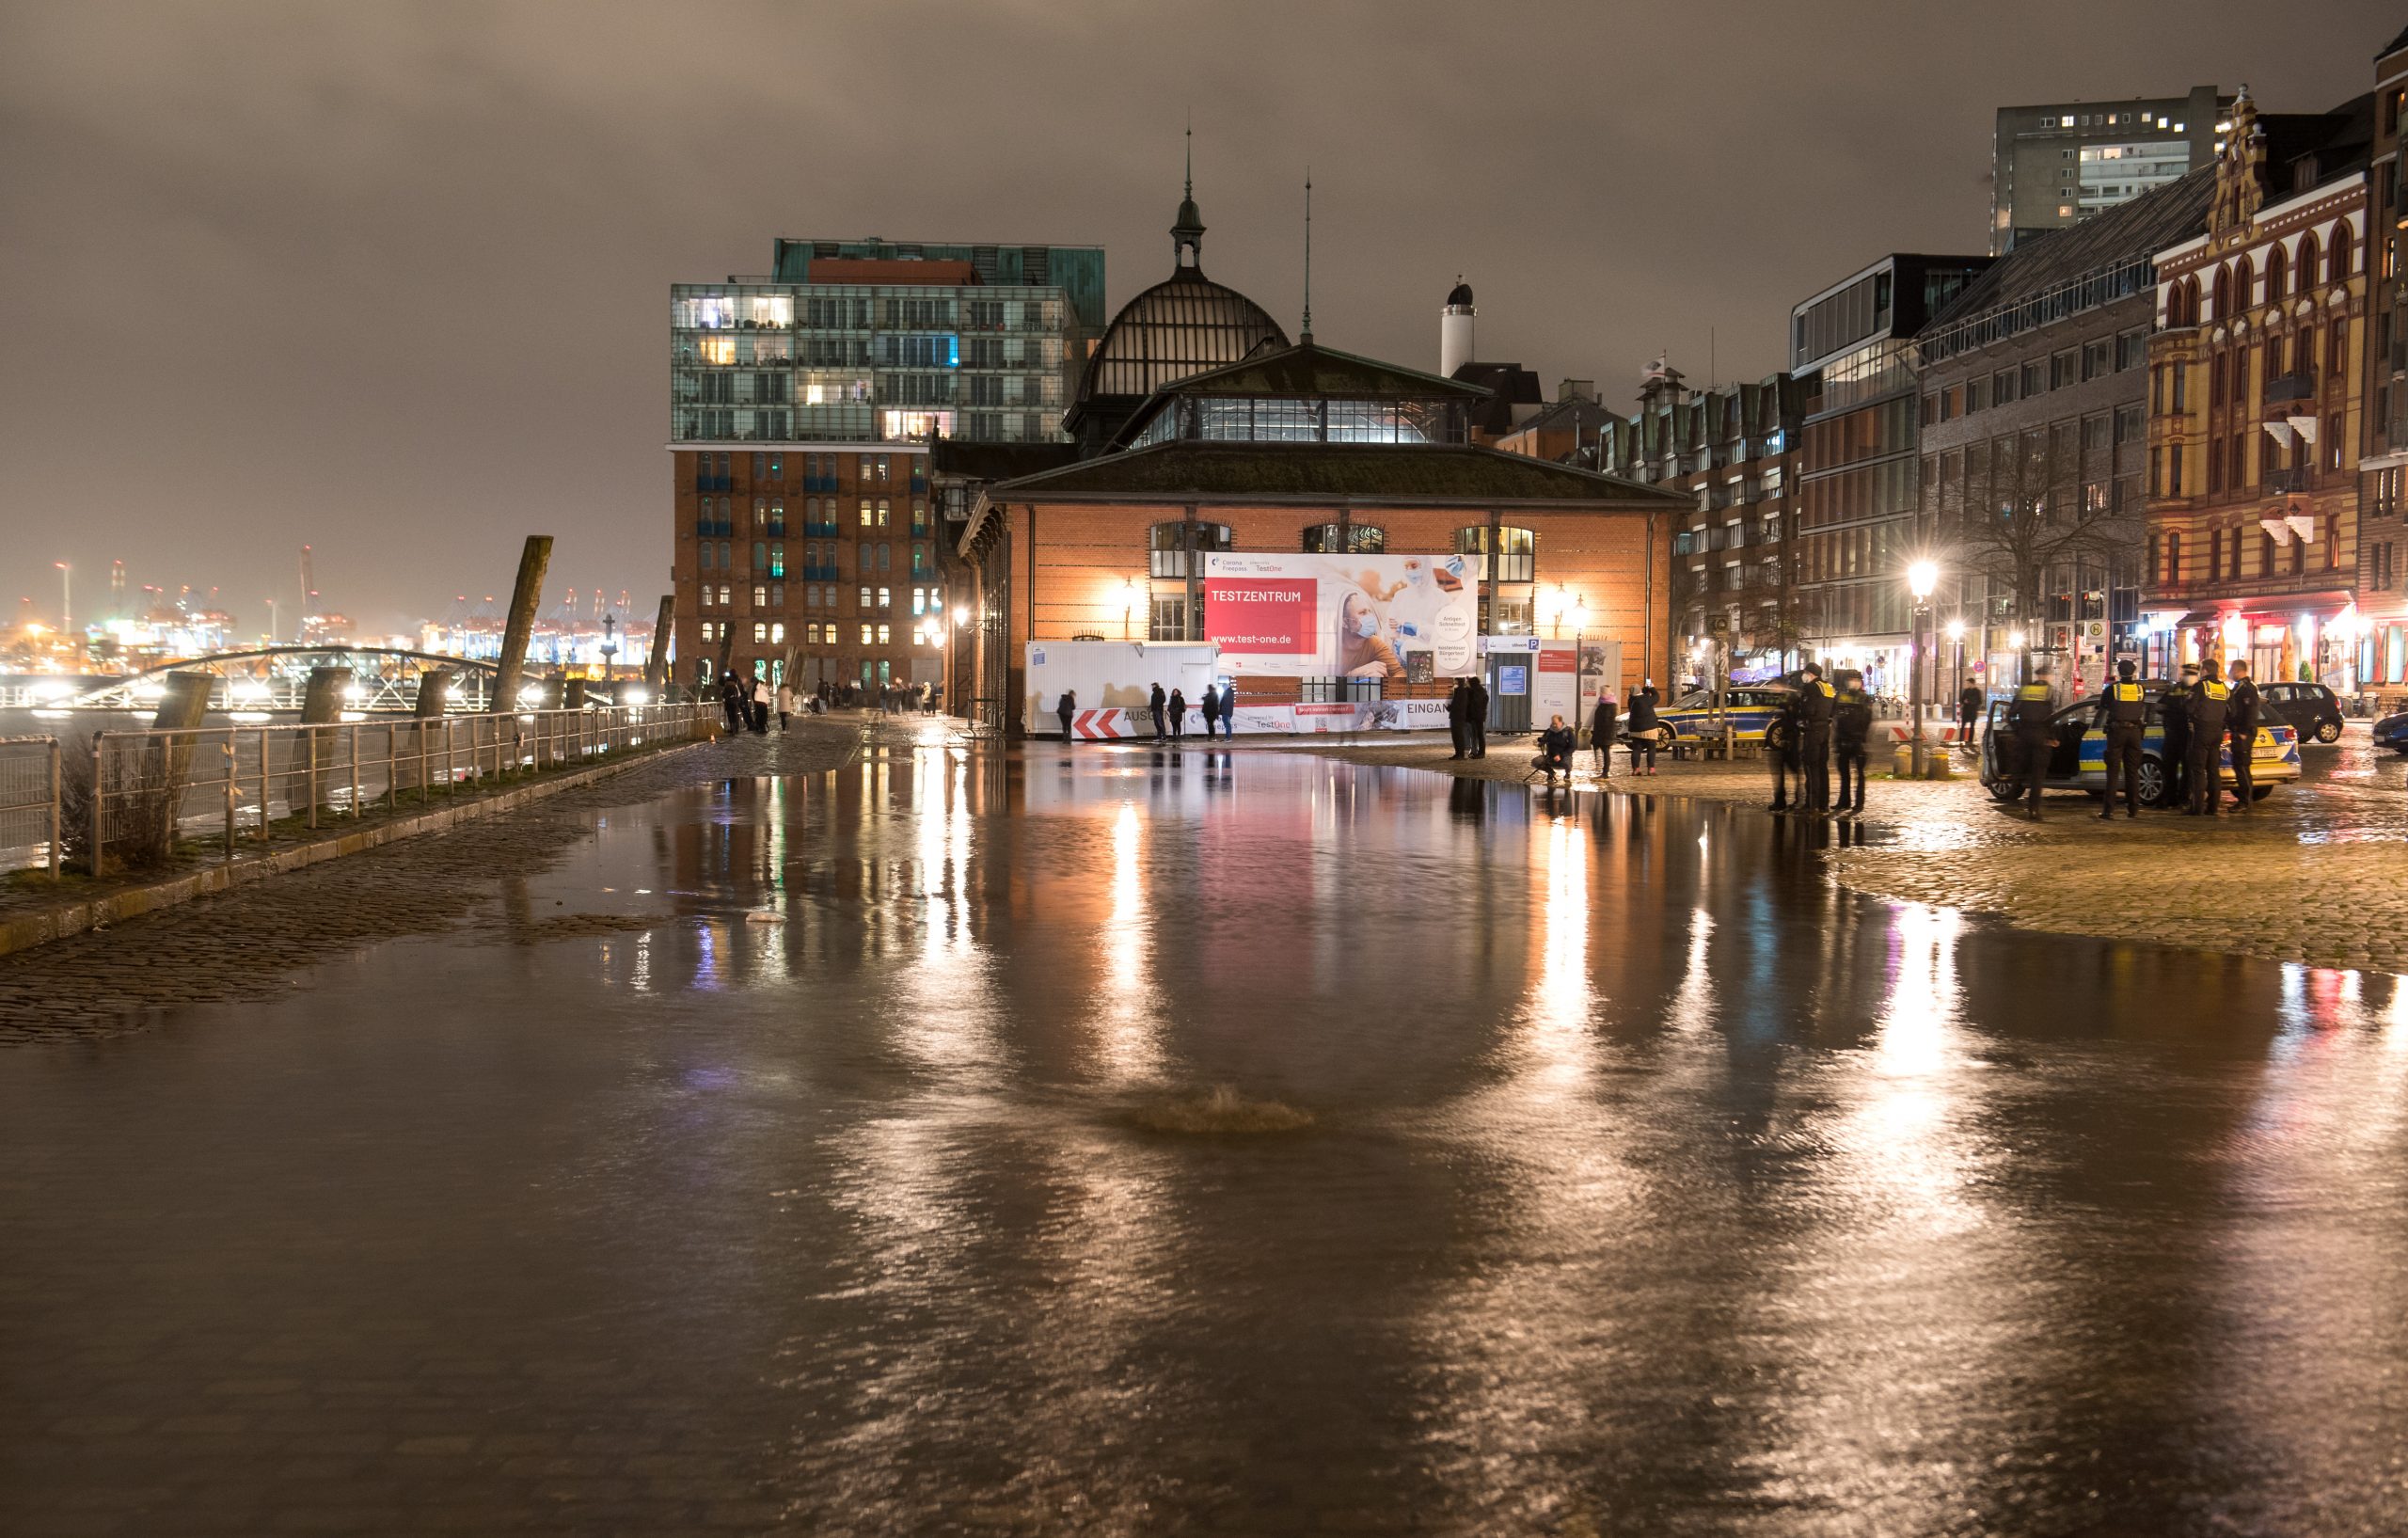 Der Fischmarkt mit der Fischauktionshalle steht am späten Abend während des Hochwassers der Elbe teilweise unter Wasser.